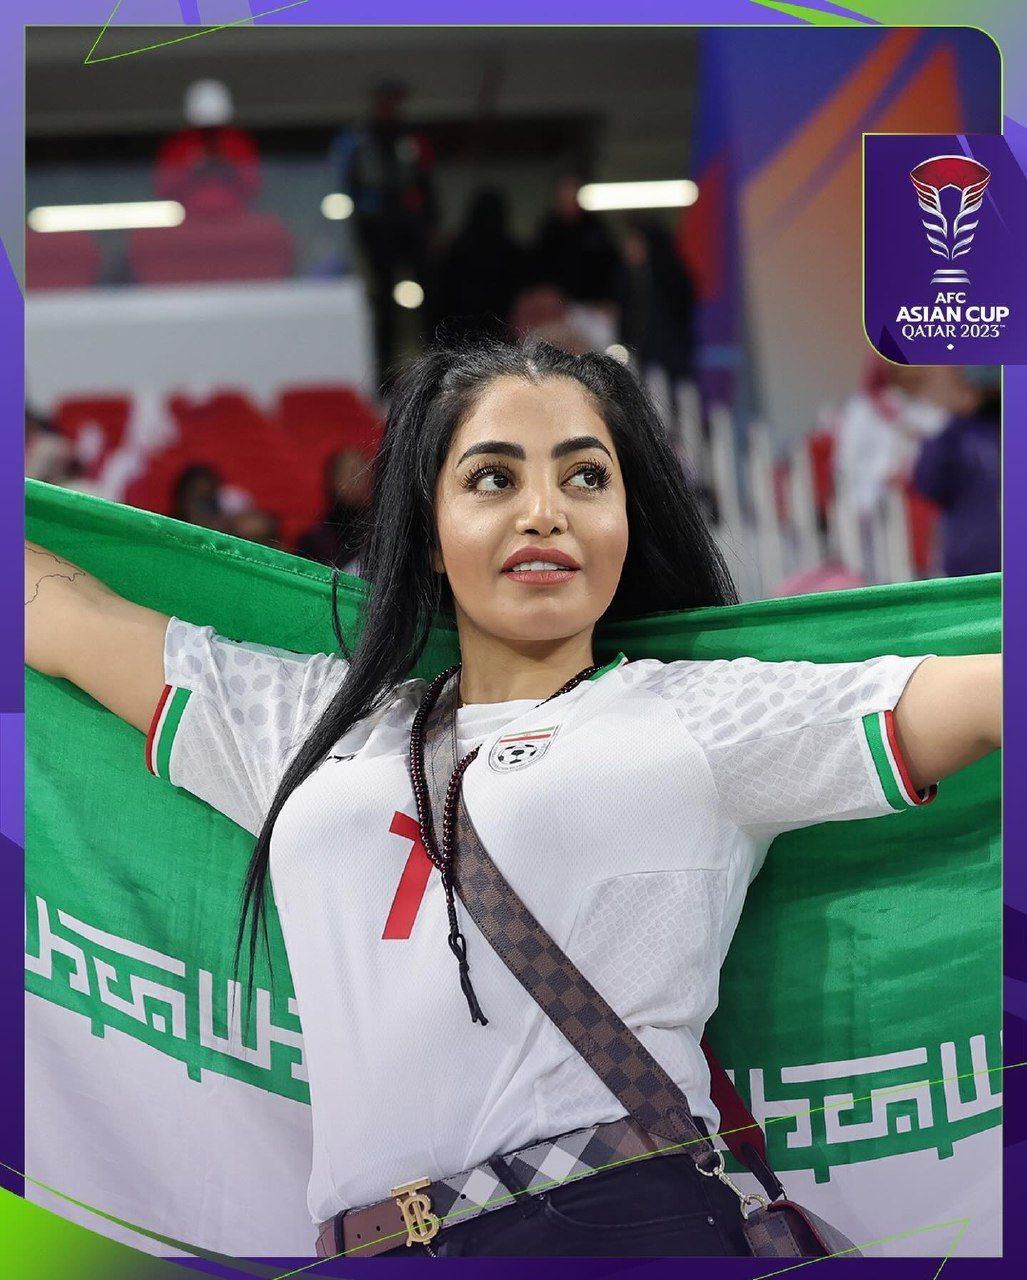 تصاویر تماشاگران زن ایرانی در قطر | تصاویر متفاوتی که AFC از تماشاگران زن ایرانی در بازی دیروز با قطر منتشر کرد